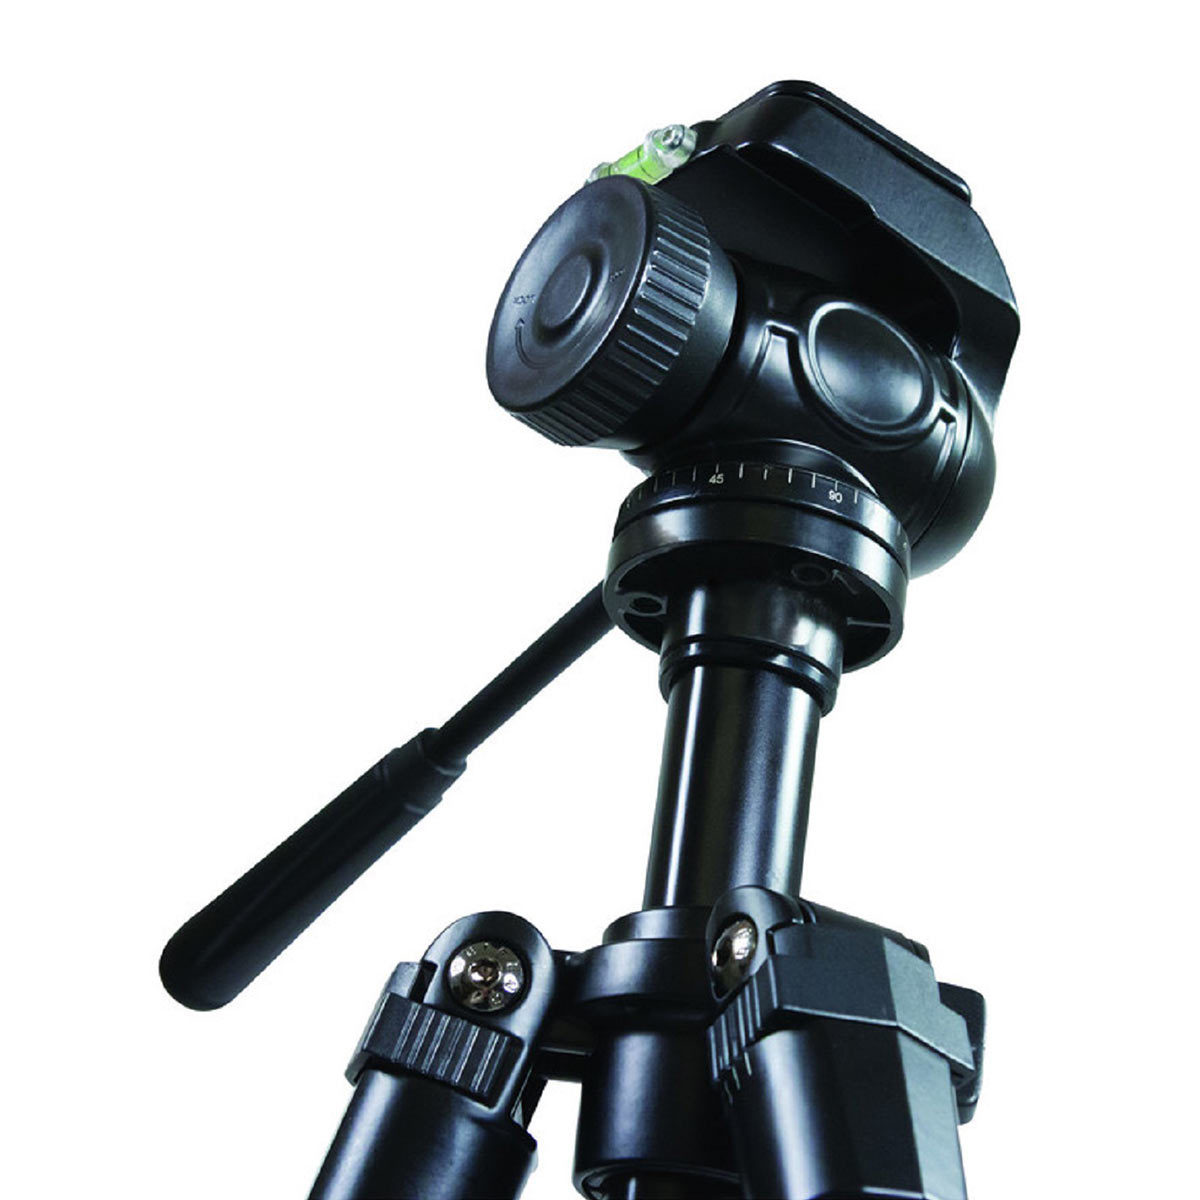 The Celestron Trailseeker Spotting scope